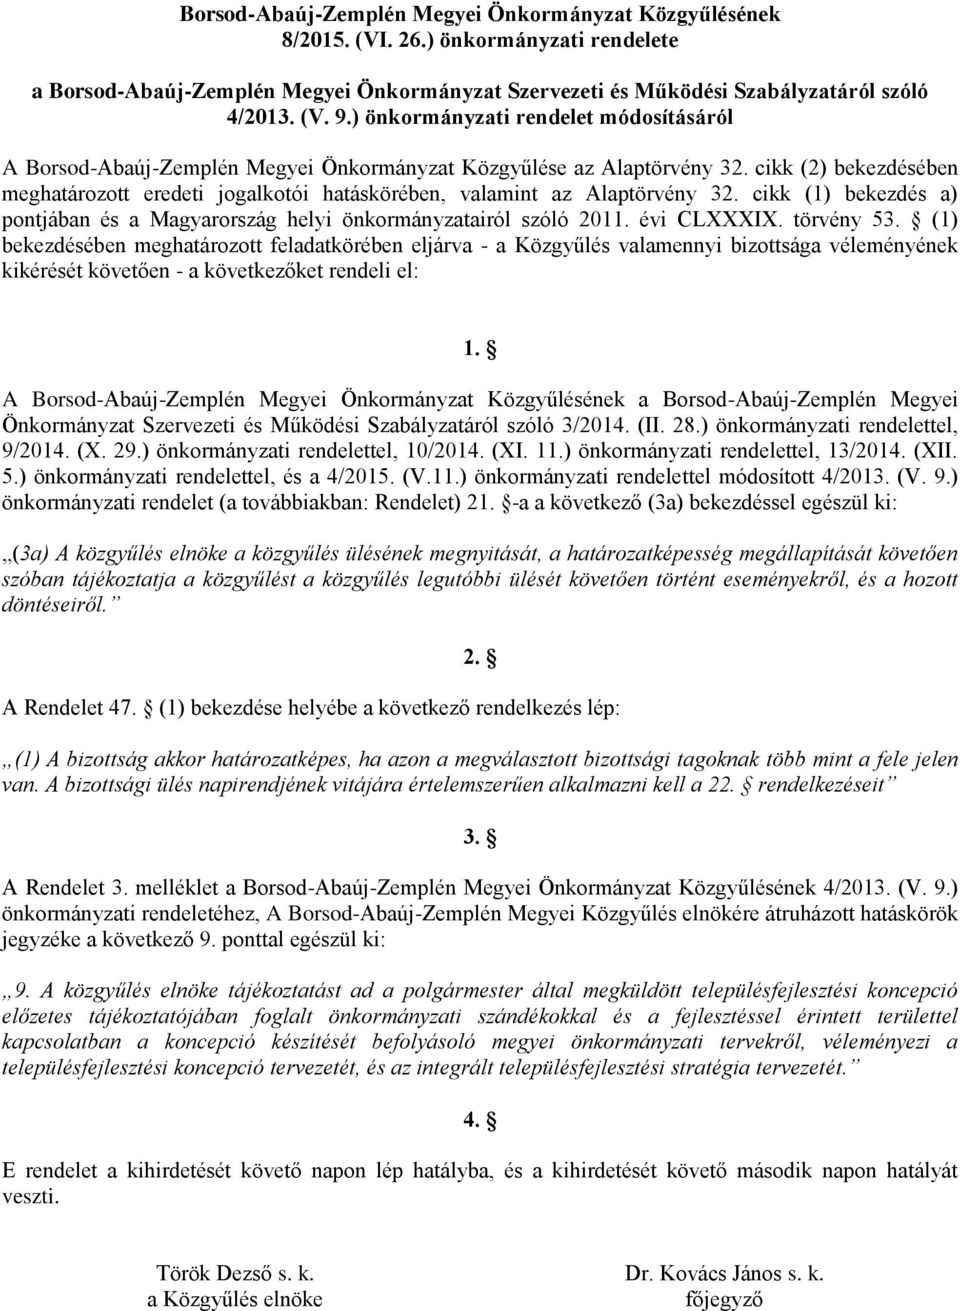 cikk (2) bekezdésében meghatározott eredeti jogalkotói hatáskörében, valamint az Alaptörvény 32. cikk (1) bekezdés a) pontjában és a Magyarország helyi önkormányzatairól szóló 2011. évi CLXXXIX.